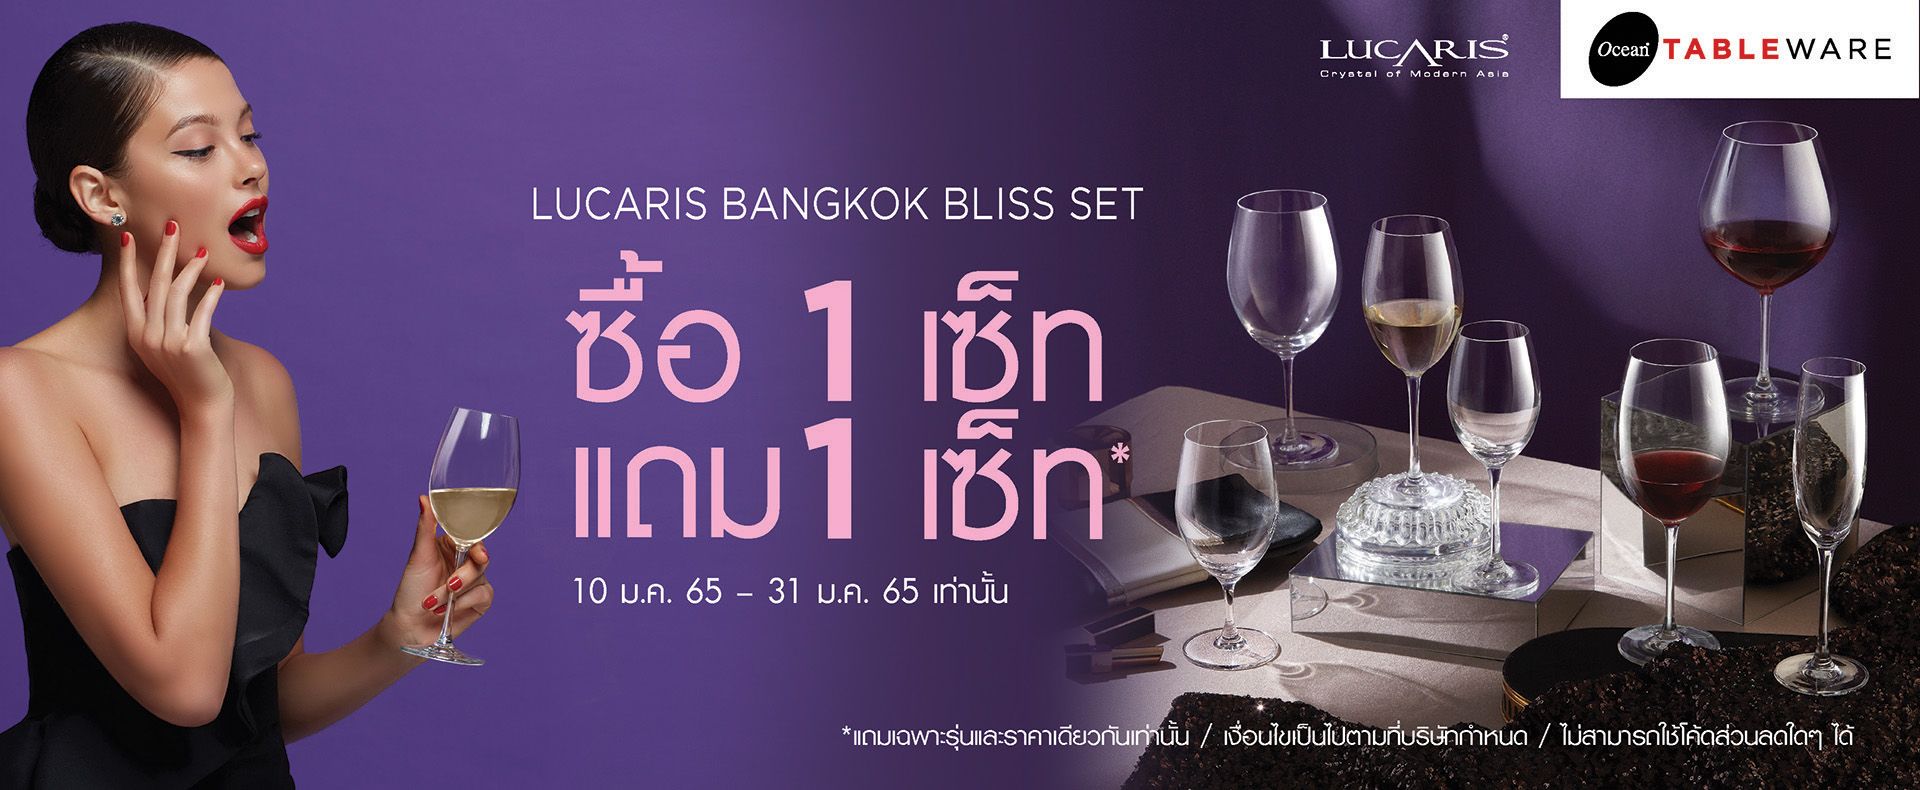 Lucaris Bangkok Bliss